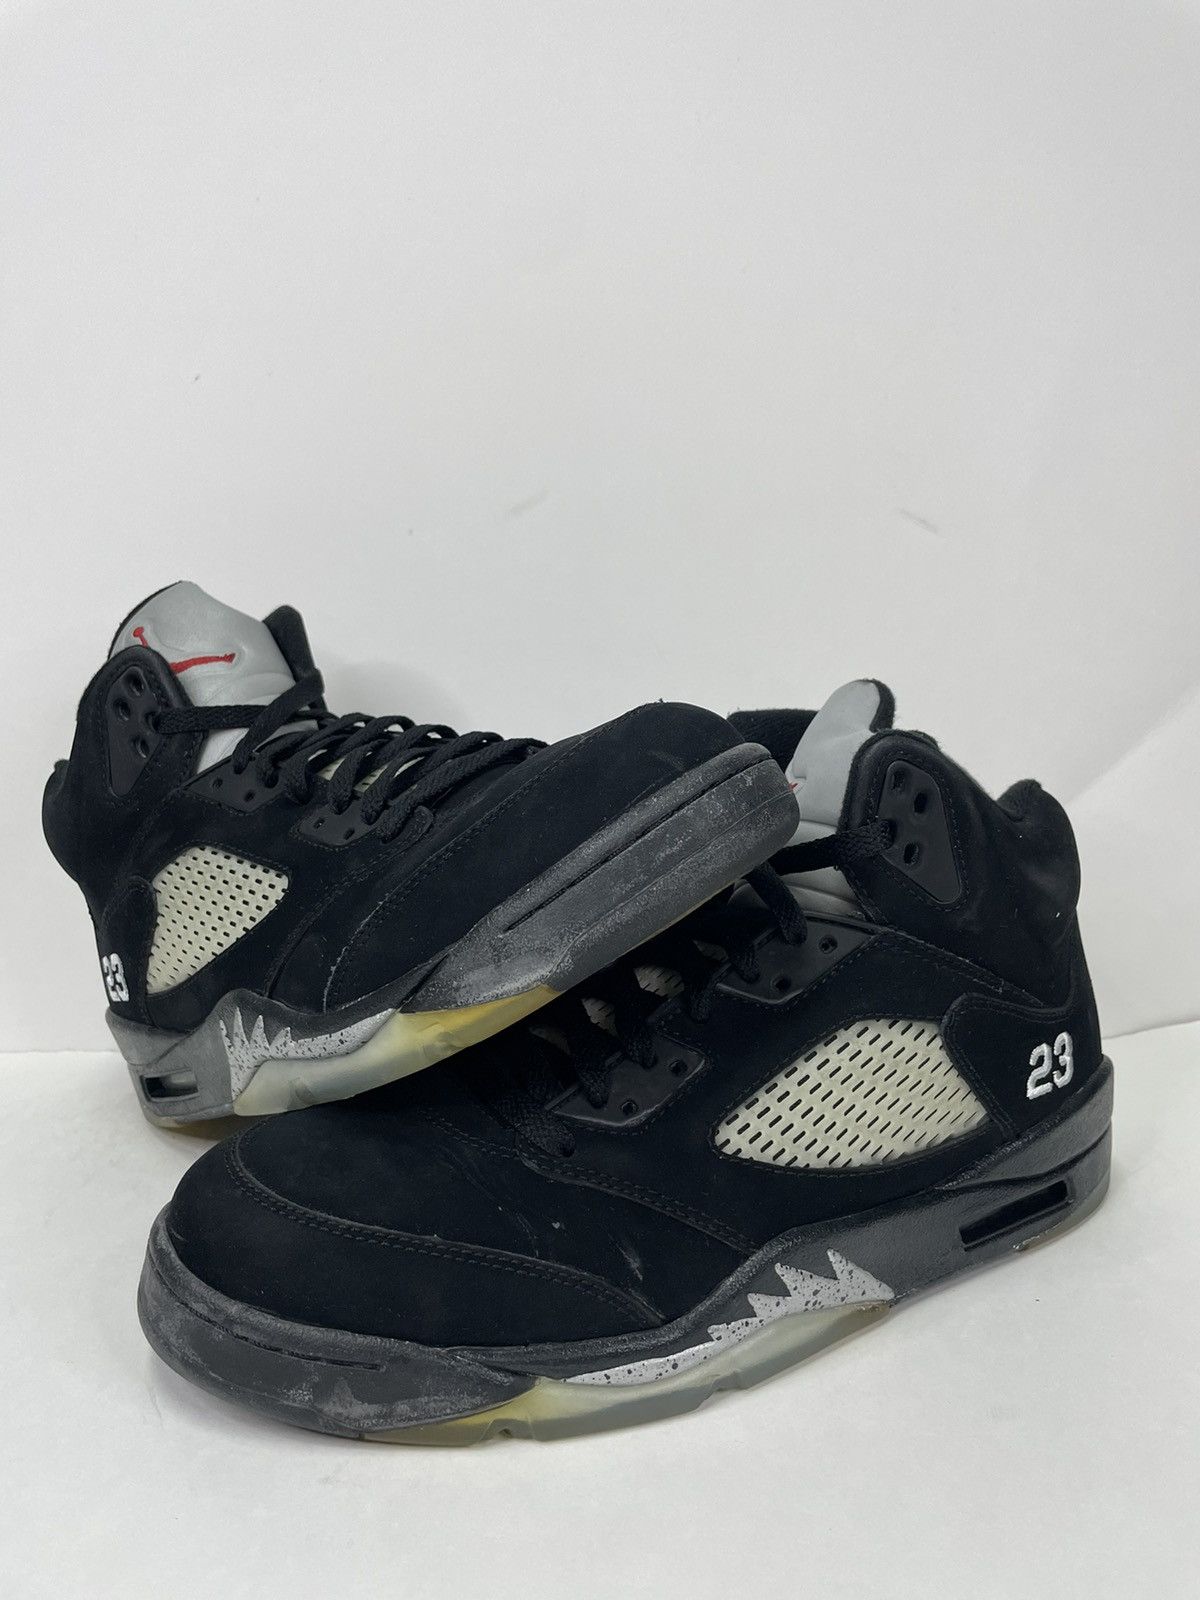 Pre-owned Jordan Brand Air Jordan 5 Retro Black Metallic 2011 Shoes